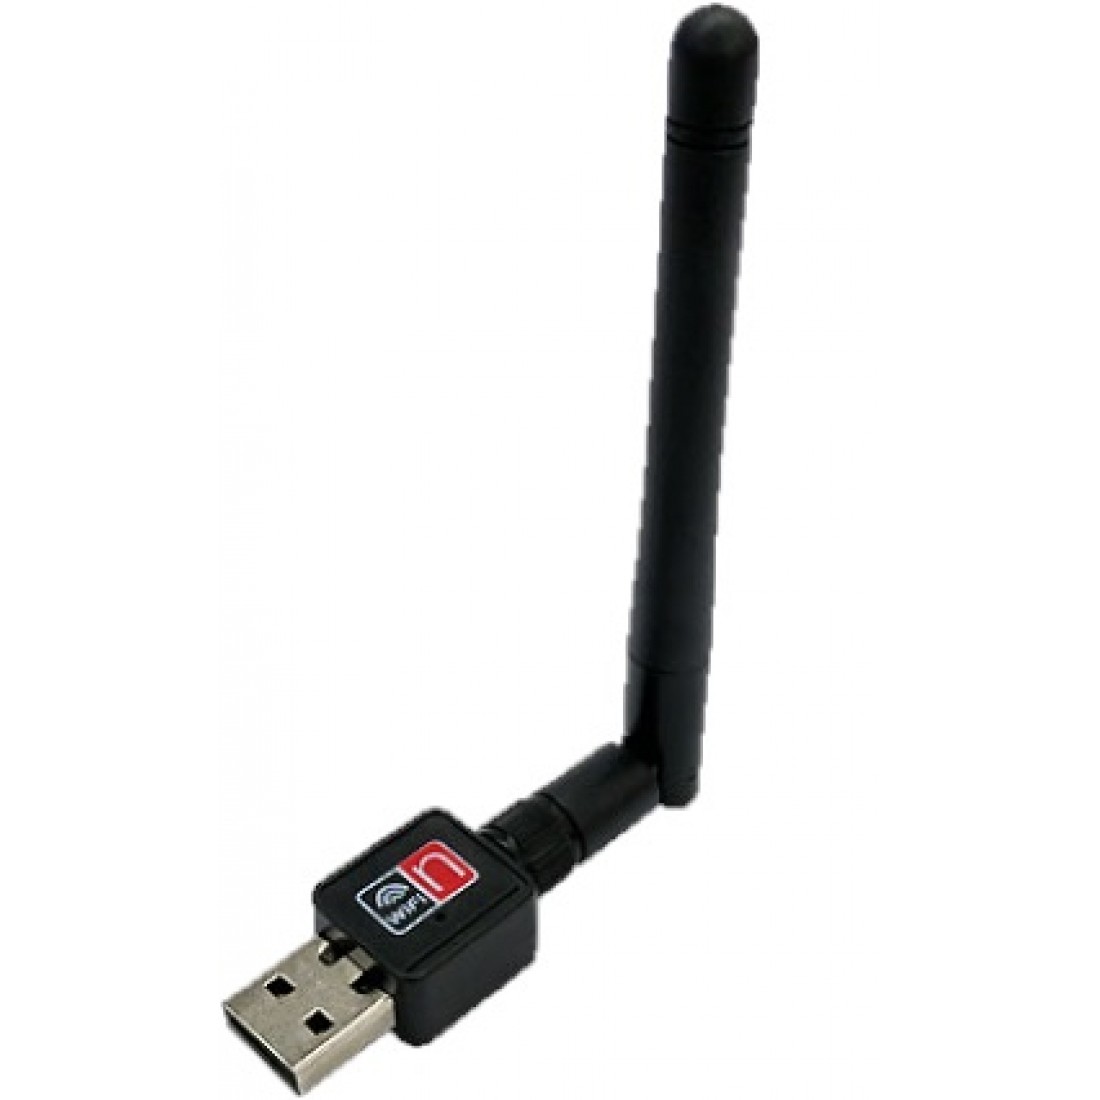 Беспроводная usb связь. USB Wi-Fi адаптер (802.11n). USB Wi-Fi адаптер rt5370. WIFI адаптер Wireless lan USB 802.11 N. Wi-Fi адаптер 802.11 n WLAN С антенной.